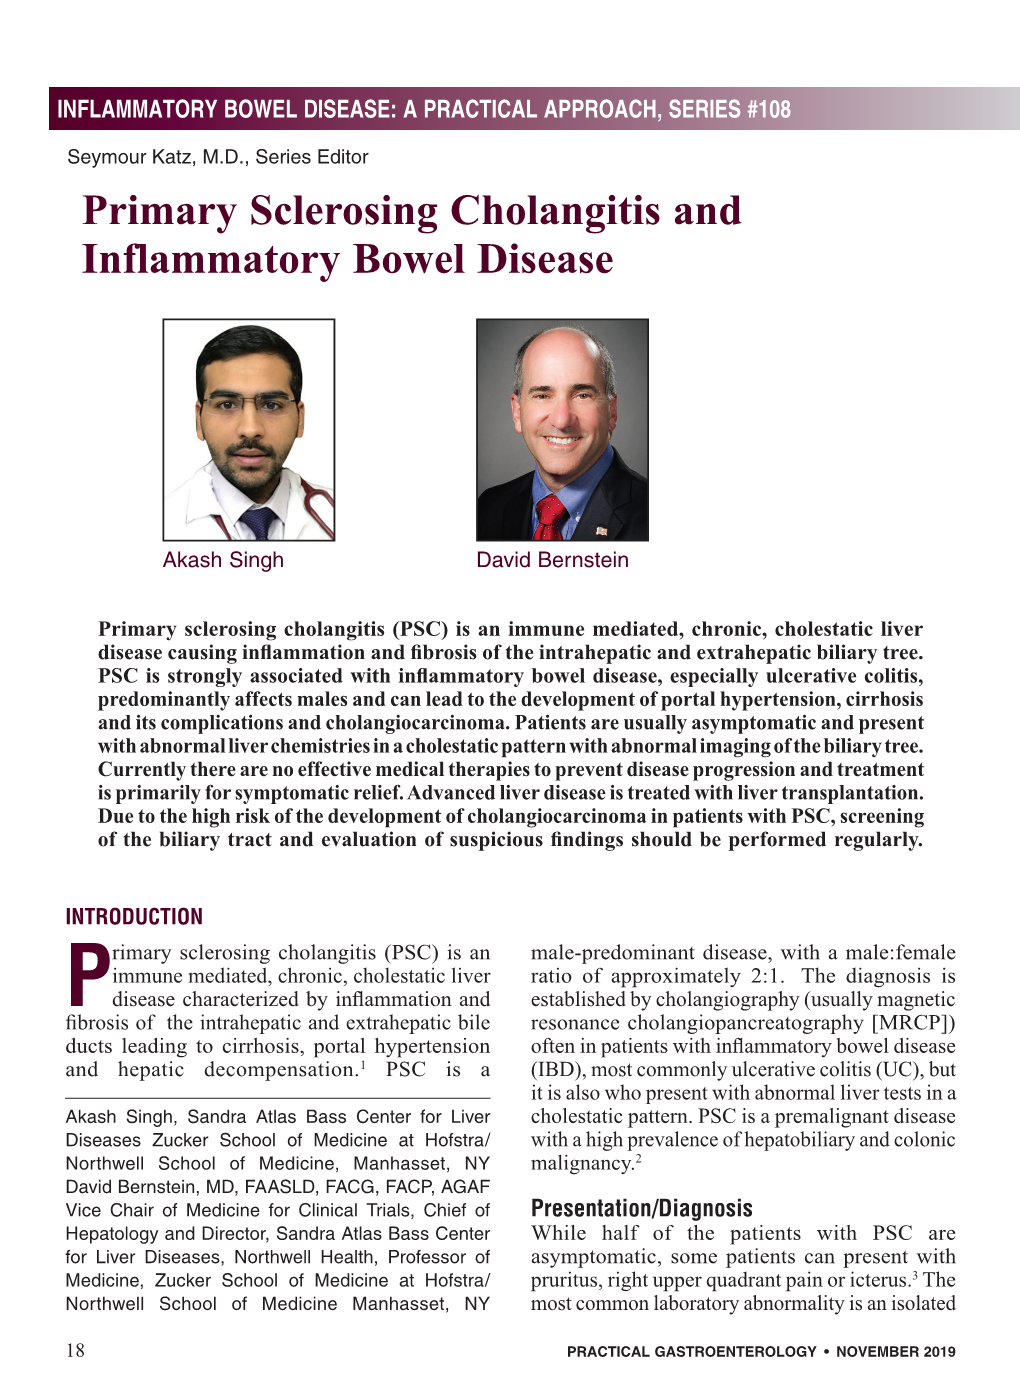 Primary Sclerosing Cholangitis and Inflammatory Bowel Disease